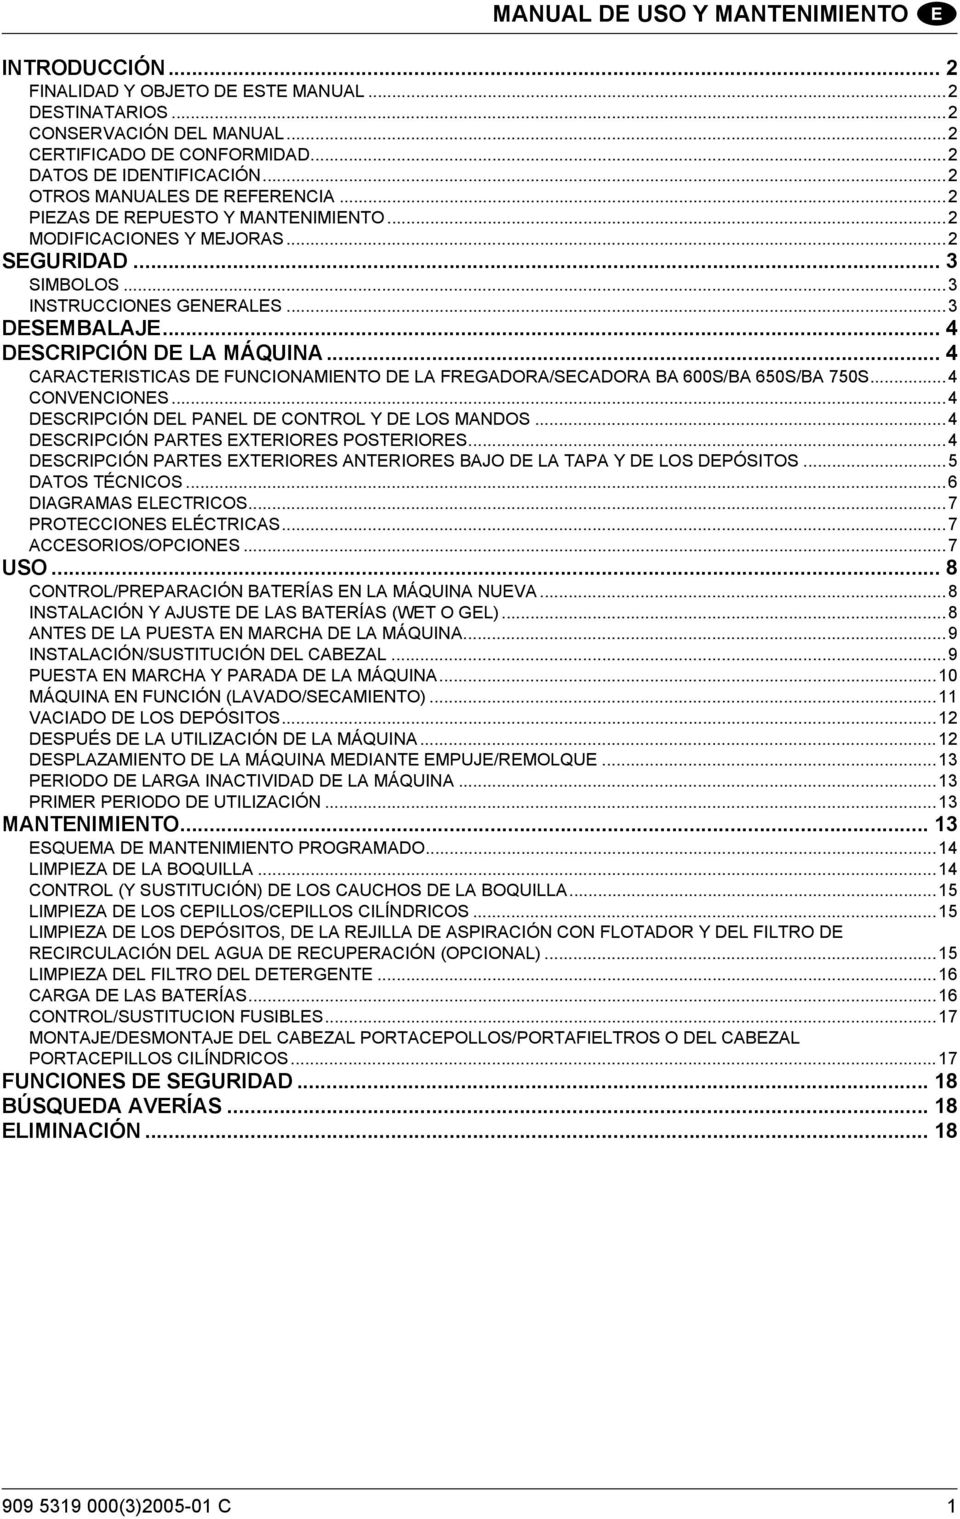 .. 4 DESCRIPCIÓN DE LA MÁQUINA... 4 CARACTERISTICAS DE FUNCIONAMIENTO DE LA FREGADORA/SECADORA BA 600S/BA 650S/BA 750S...4 CONVENCIONES...4 DESCRIPCIÓN DEL PANEL DE CONTROL Y DE LOS MANDOS.